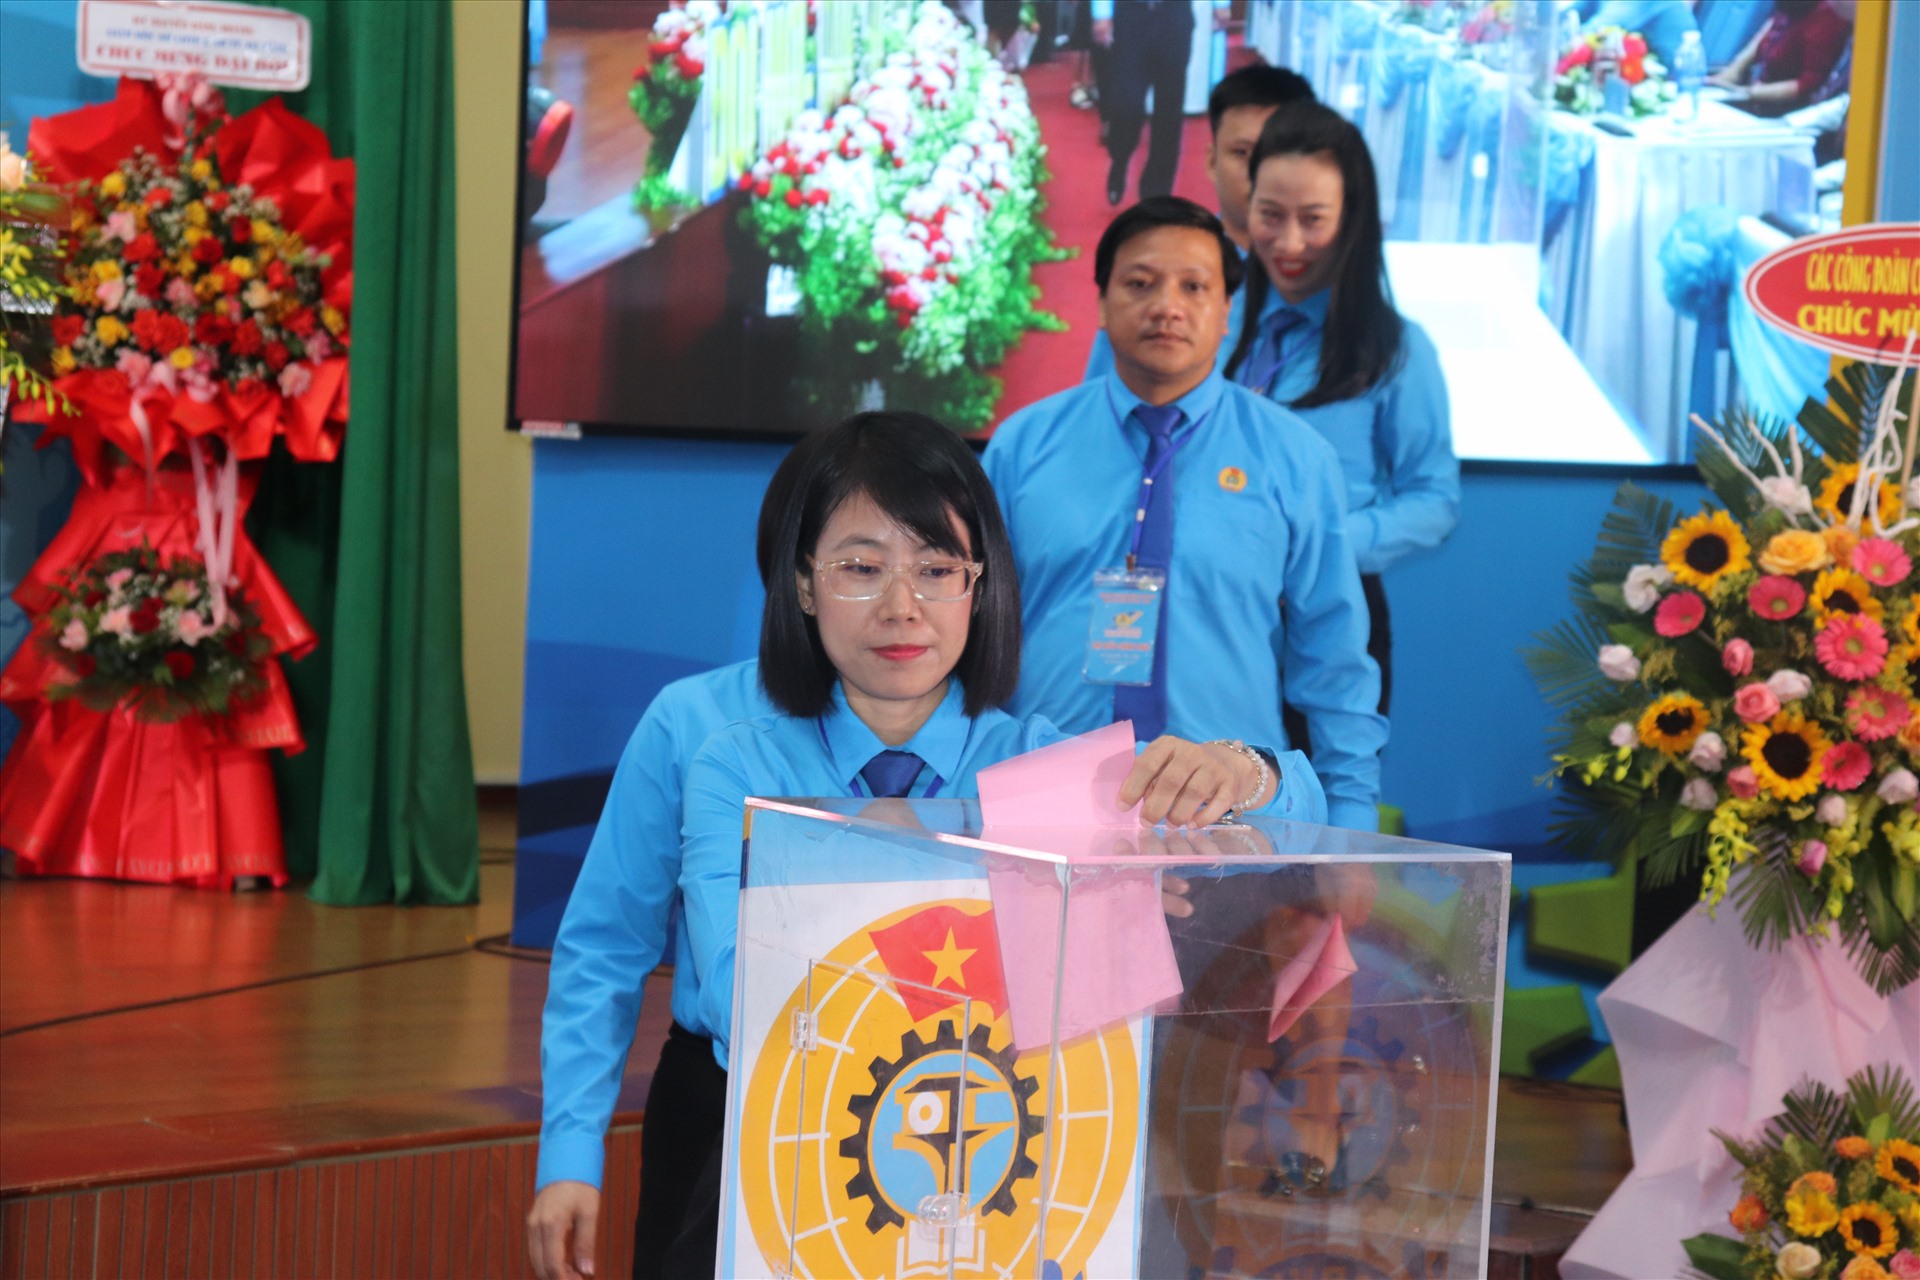 Quận Thanh Khê, Đà Nẵng hỗ trợ 2.000 đoàn viên khó khăn với gần 2 tỉ đồng